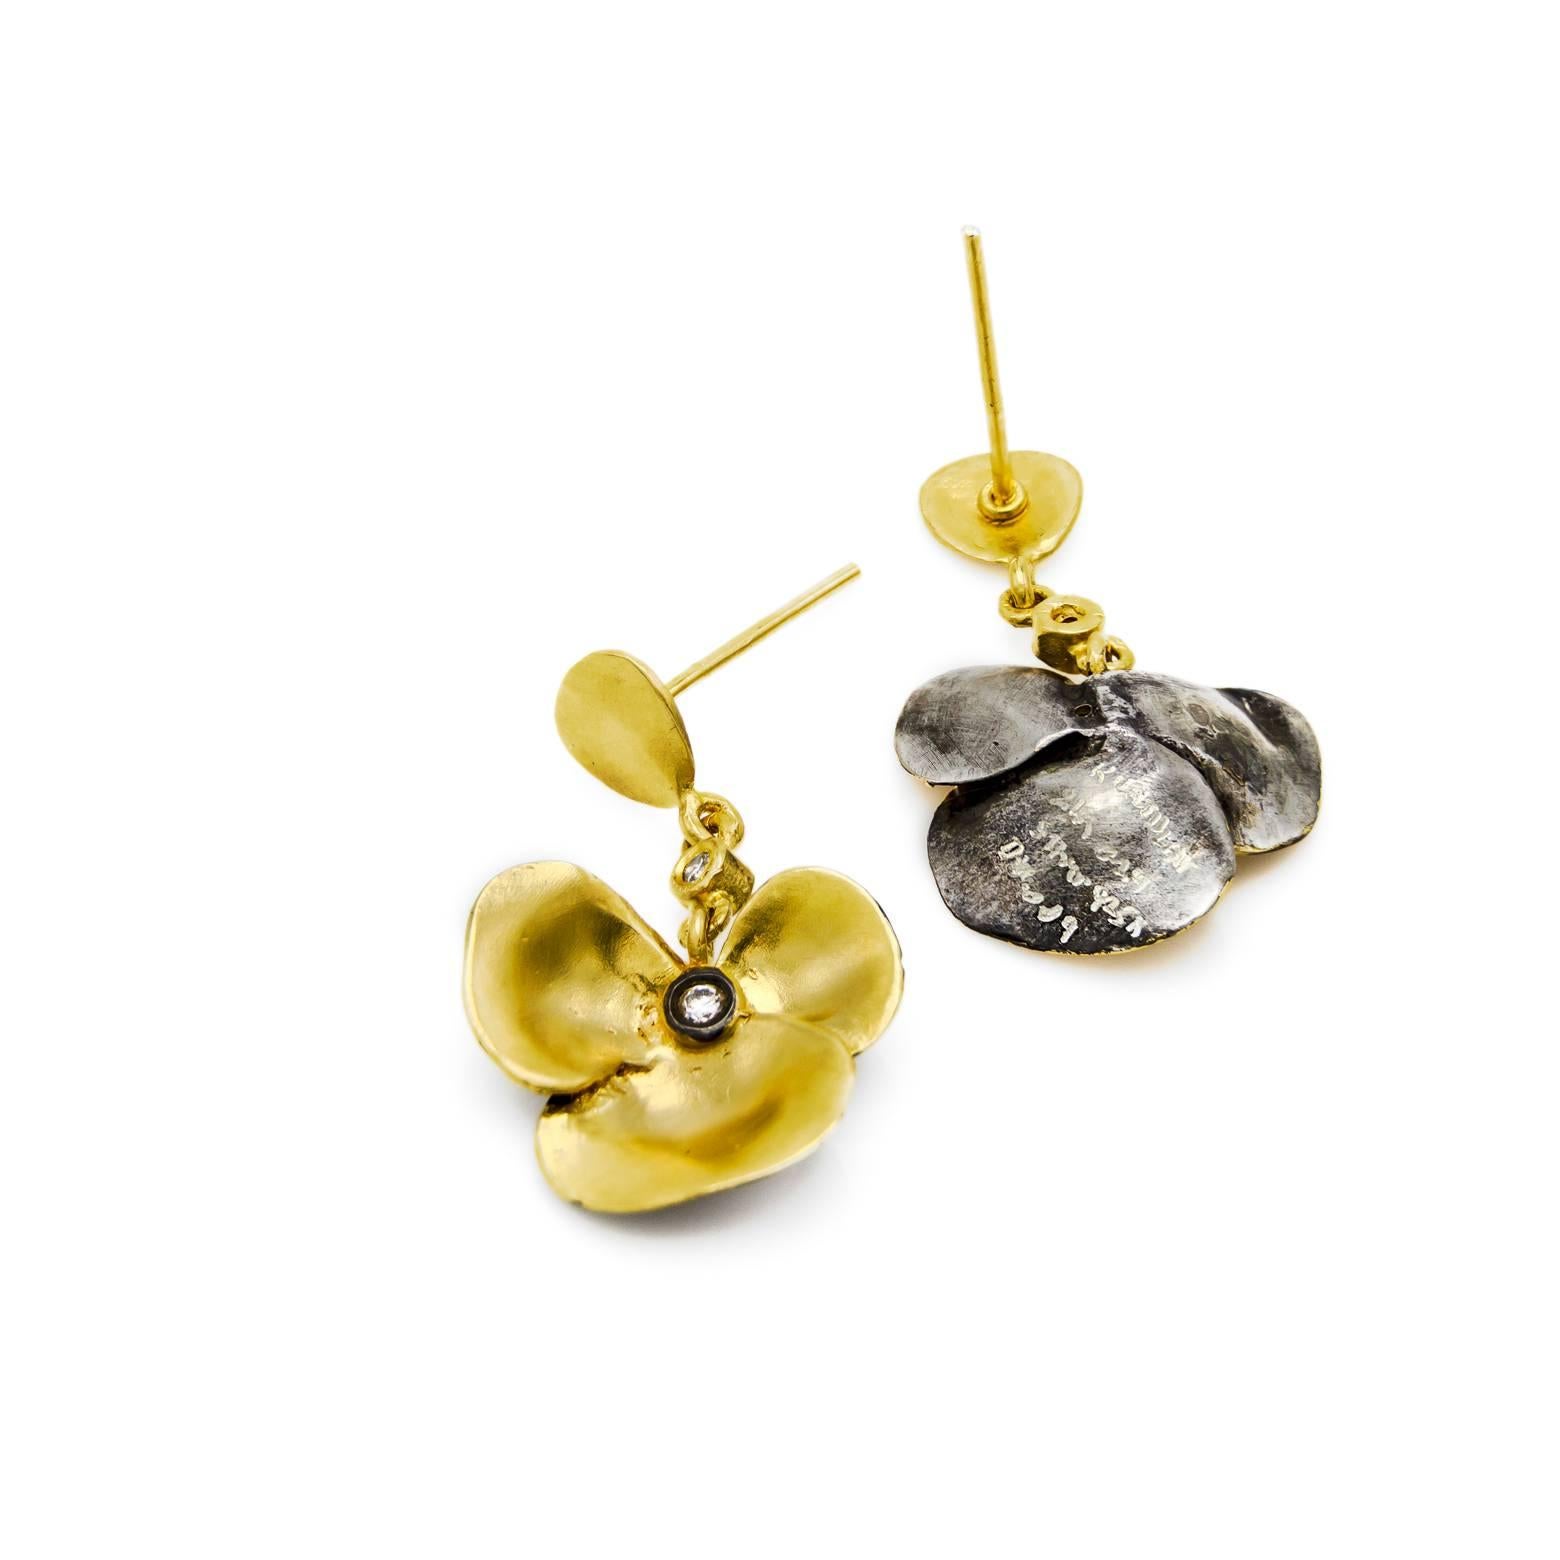 Women's Gold Vermeil Satin Finish Flower Design Post Back Earrings with 4 Diamonds. 